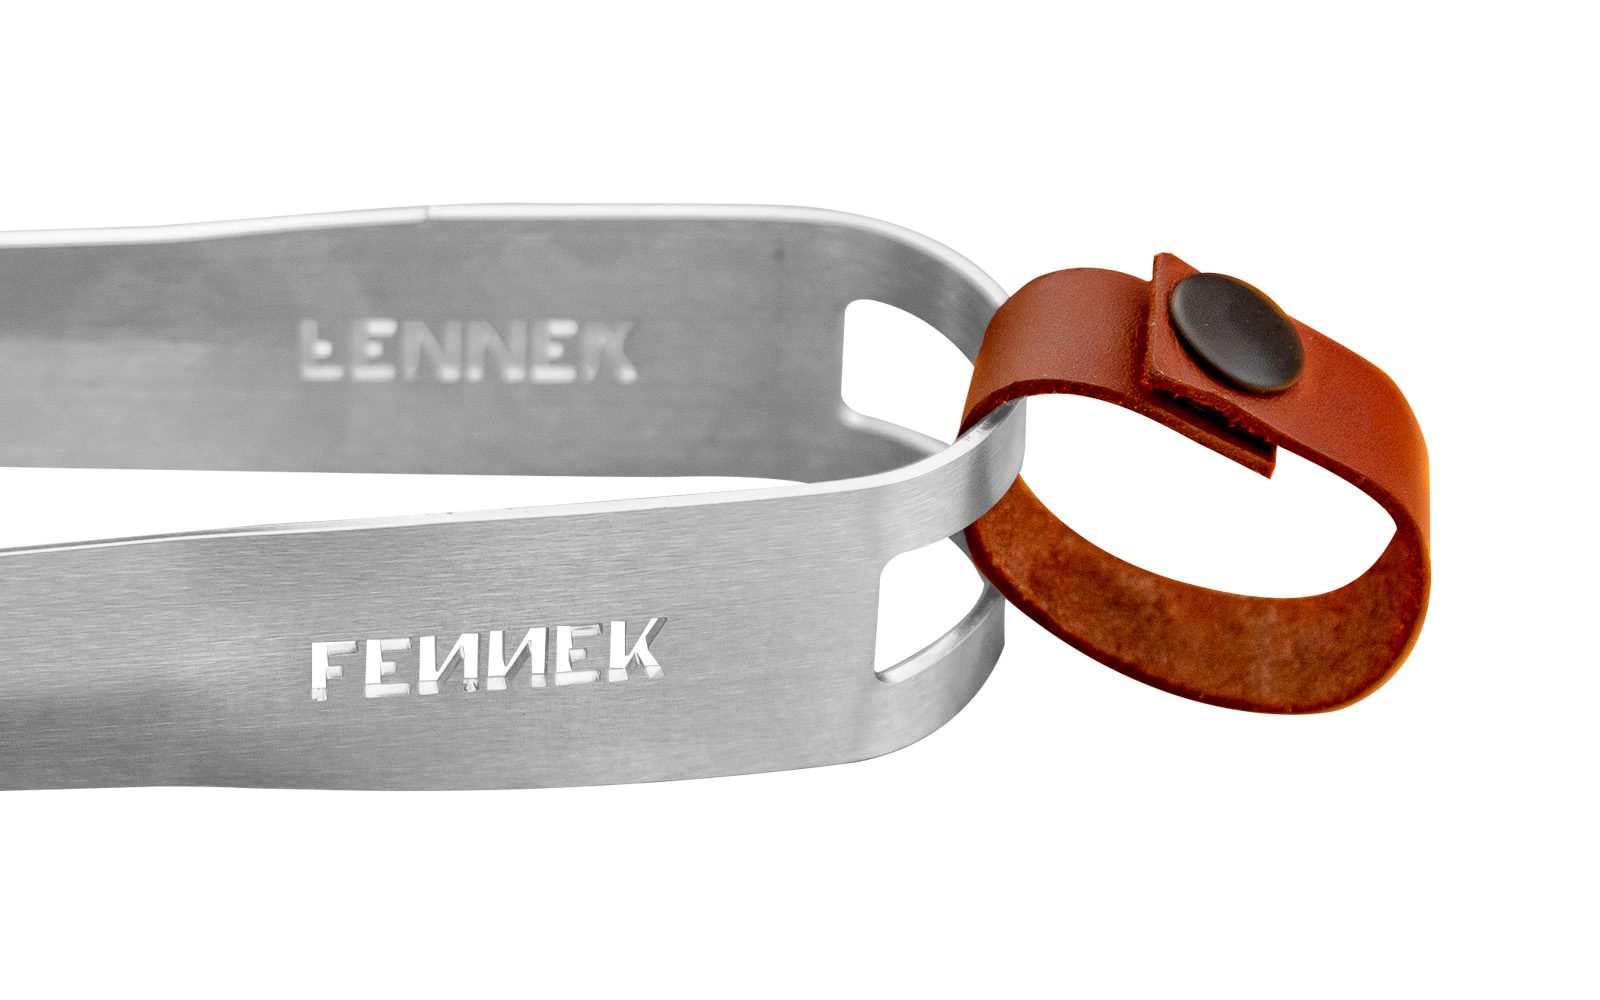 Große Nahaufnahme Griffende der Grillzange mit FENNEK-Schriftzug herausgeschnitten und Lederband mit Druckknopf als Schlaufe.